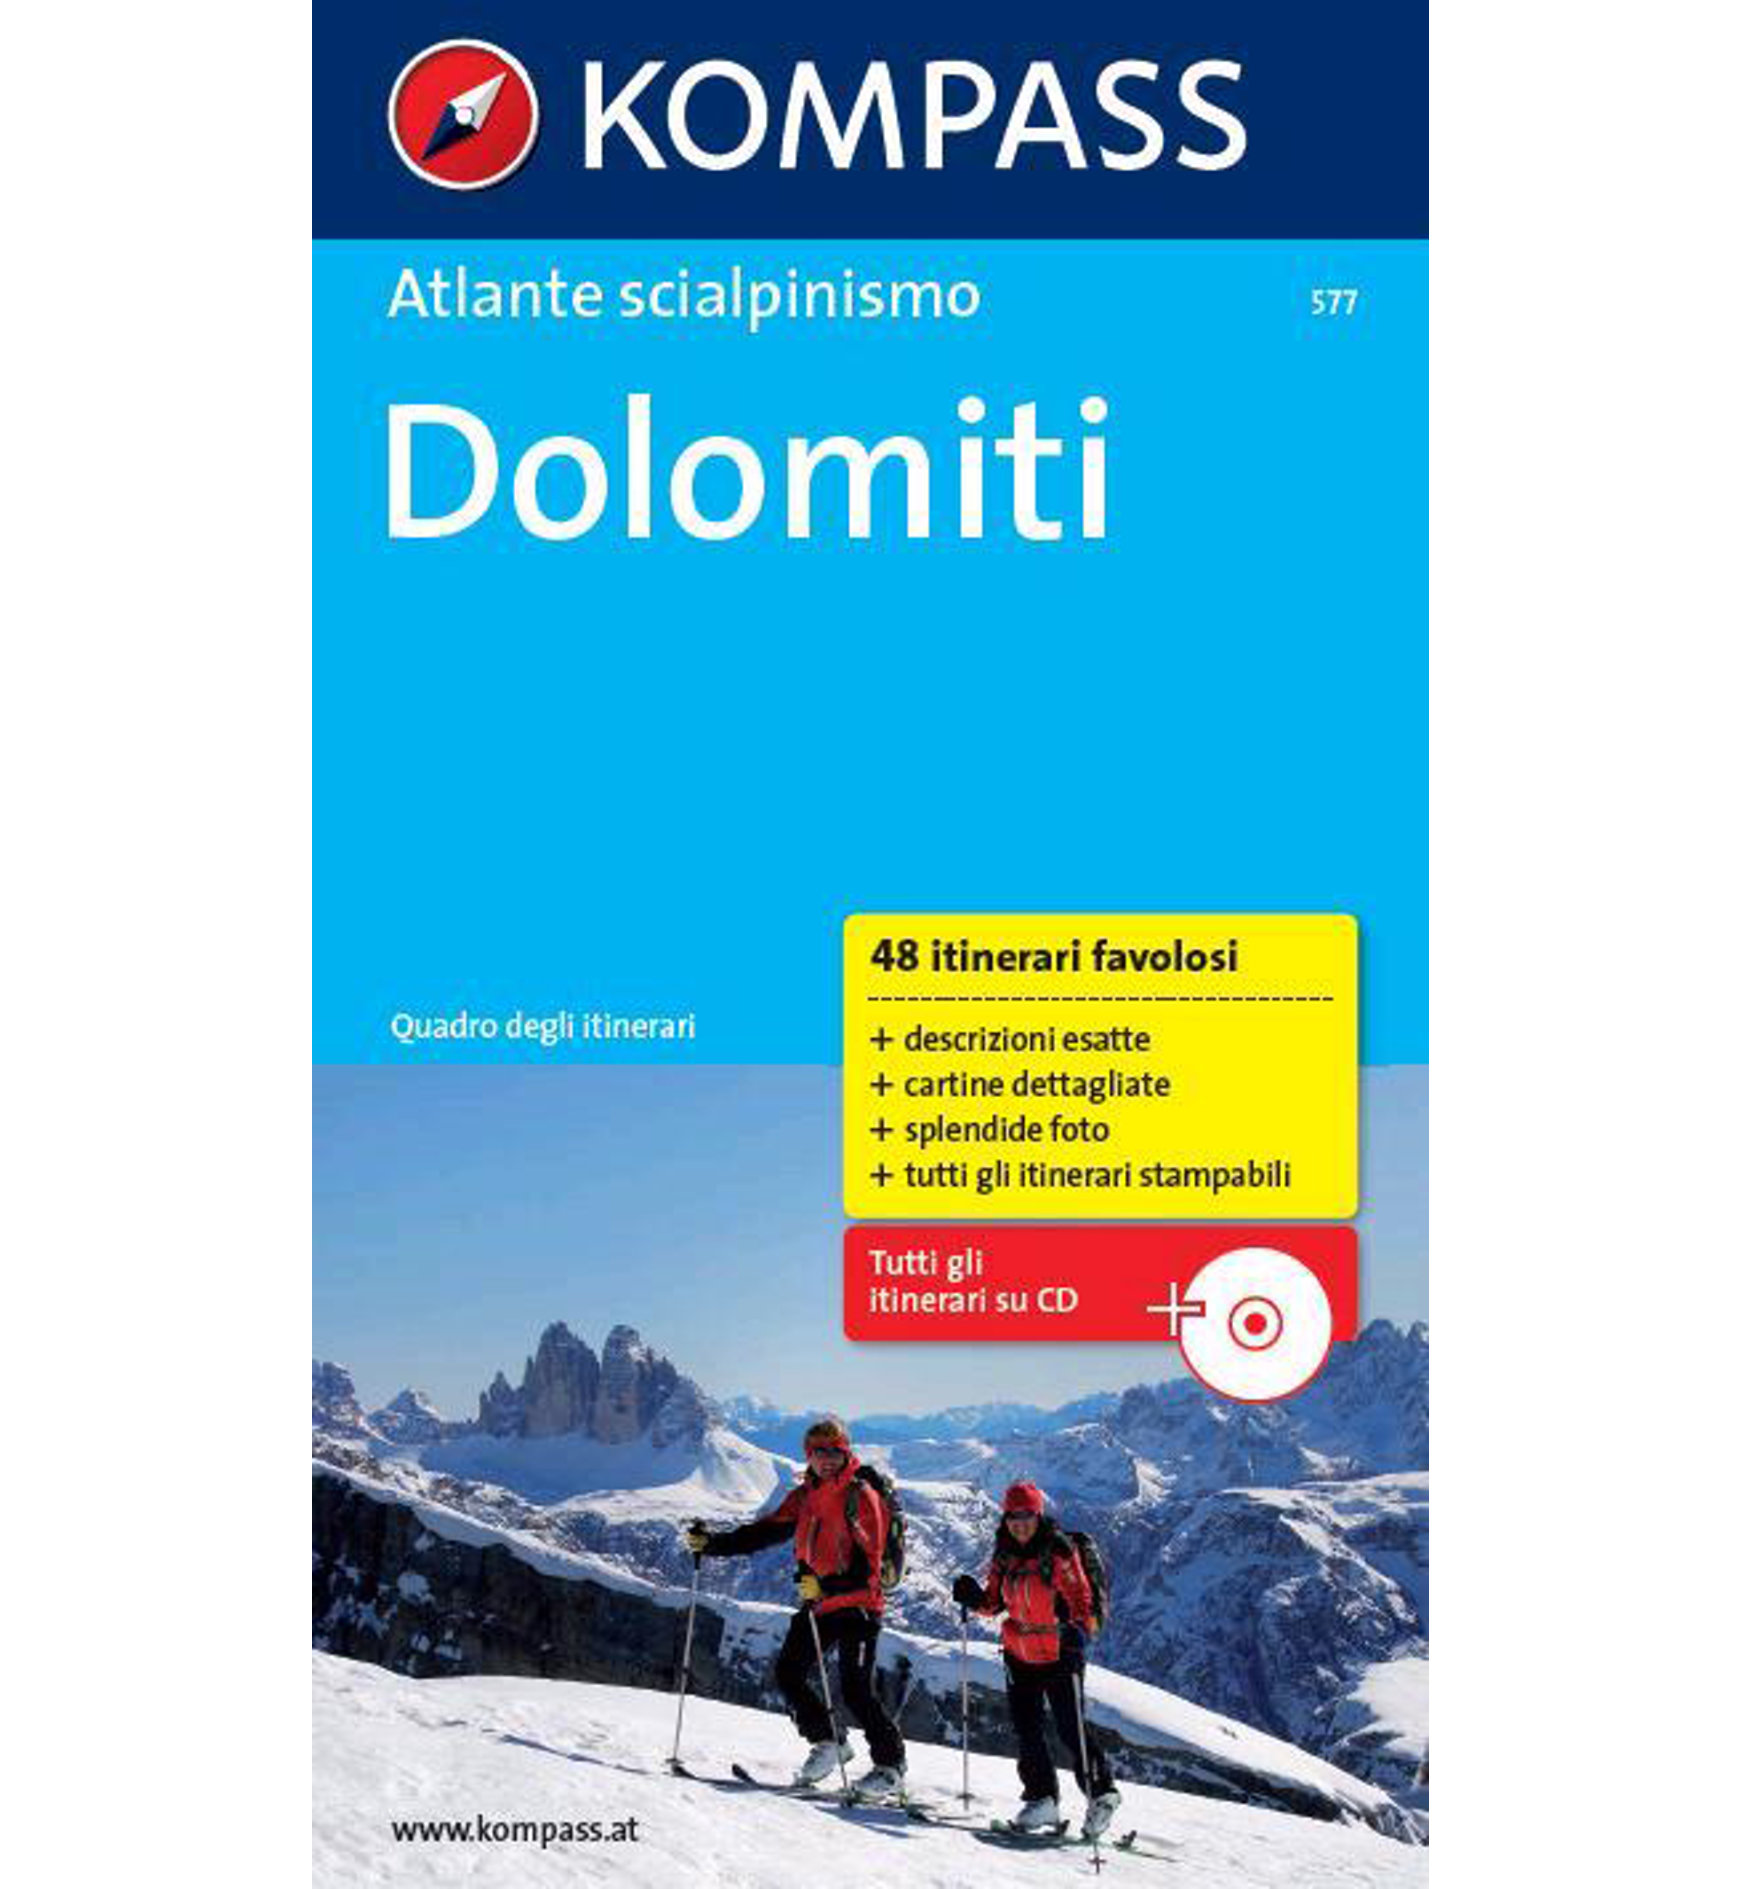 Kompass Skitouren-Atlas Dolomiten